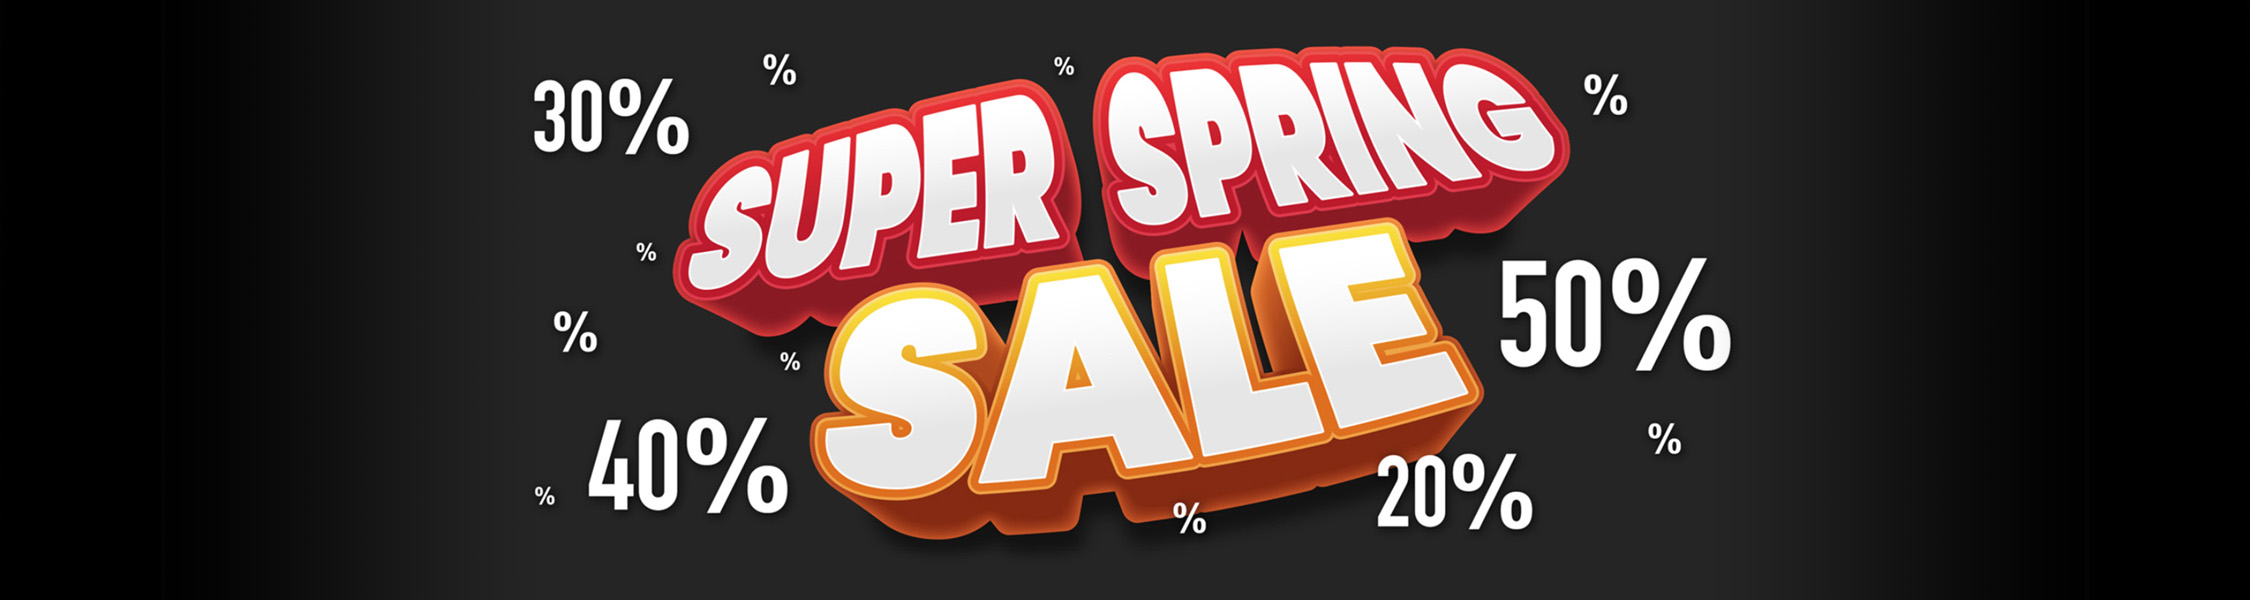 Banner_Super_Spring_Sale